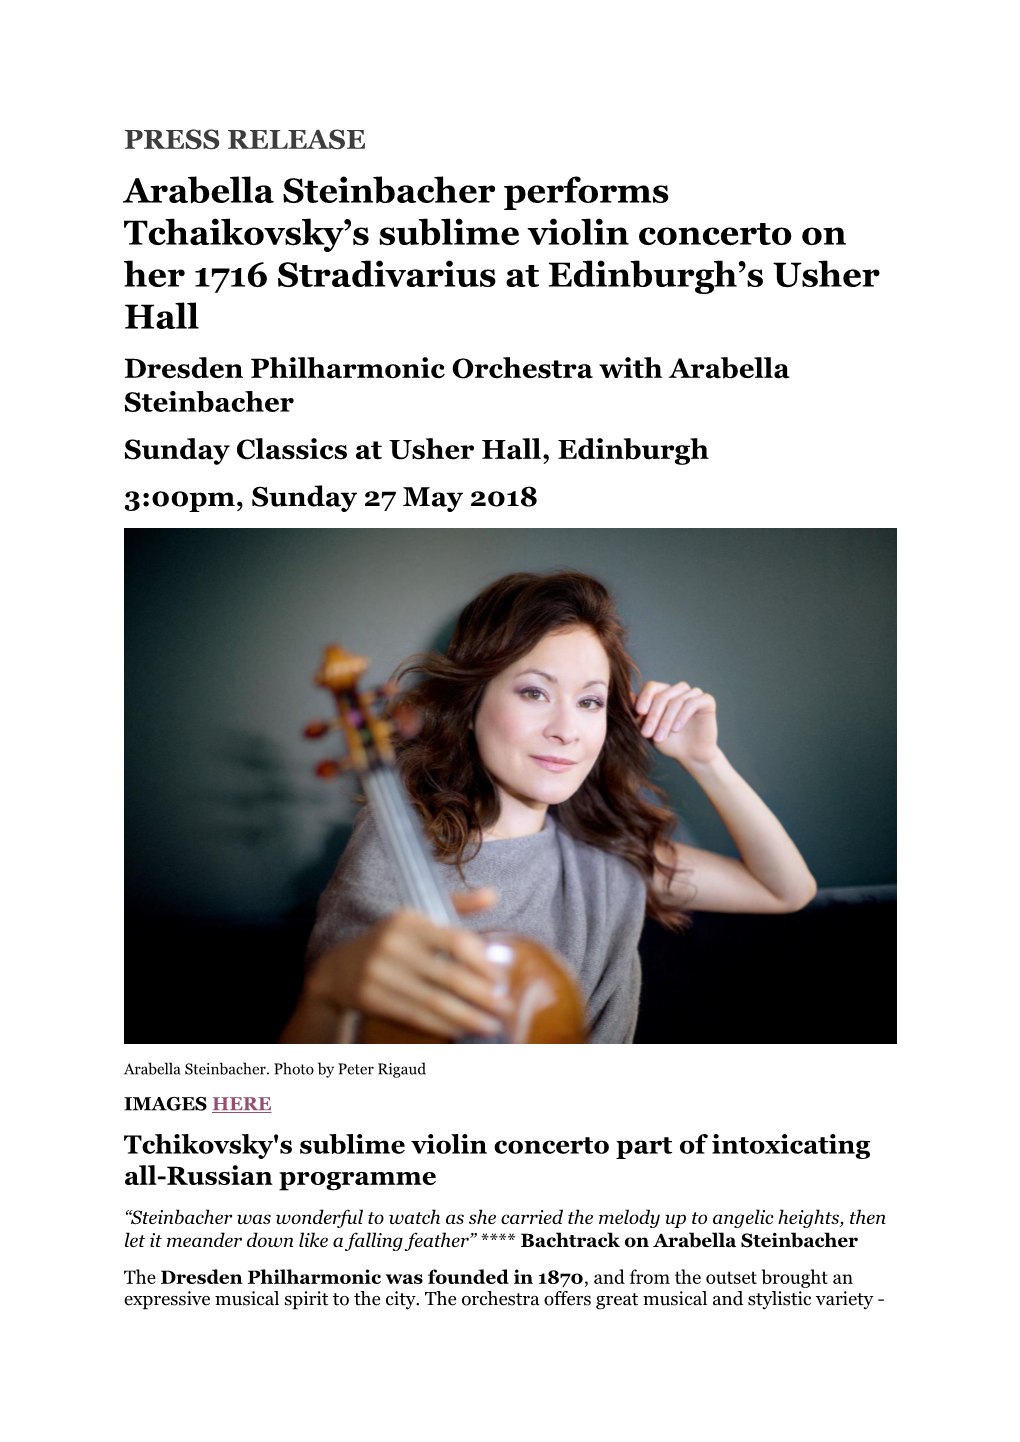 Arabella Steinbacher Performs Tchaikovsky's Sublime Violin